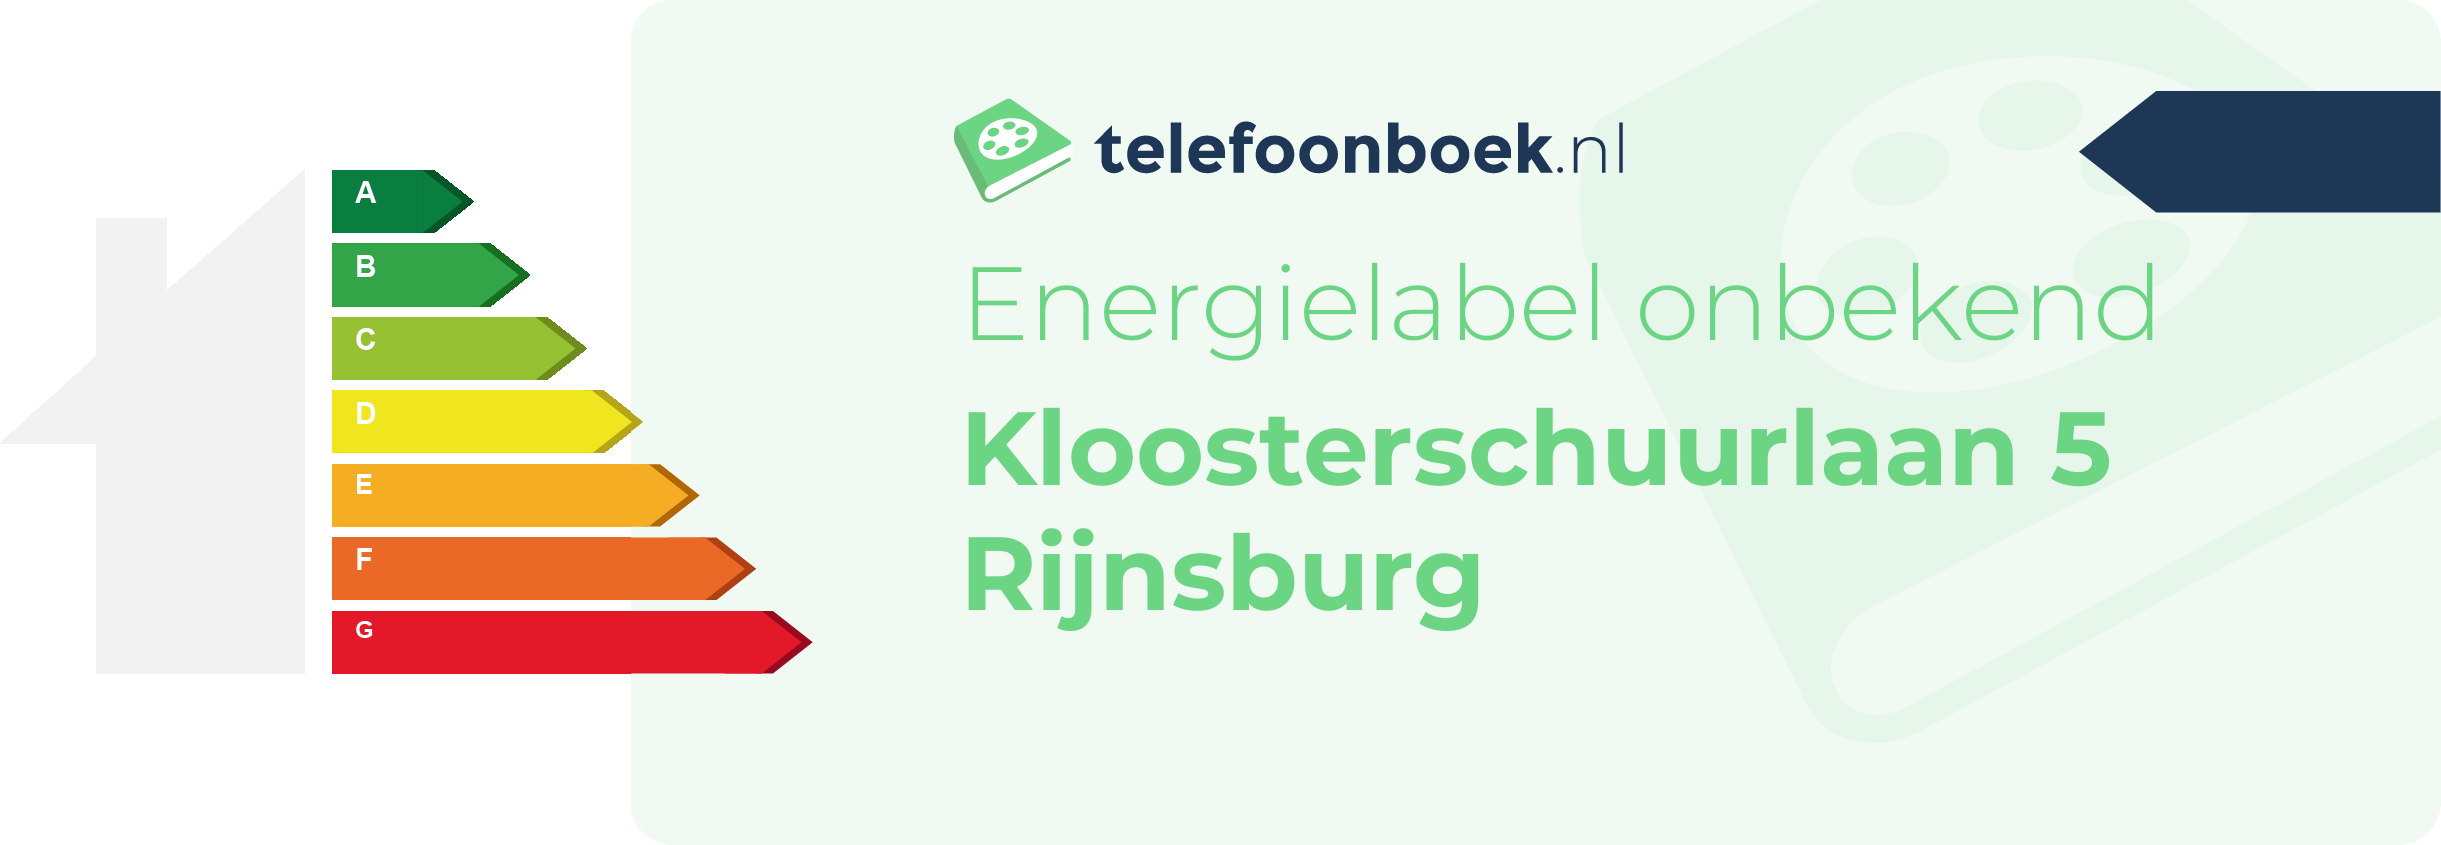 Energielabel Kloosterschuurlaan 5 Rijnsburg